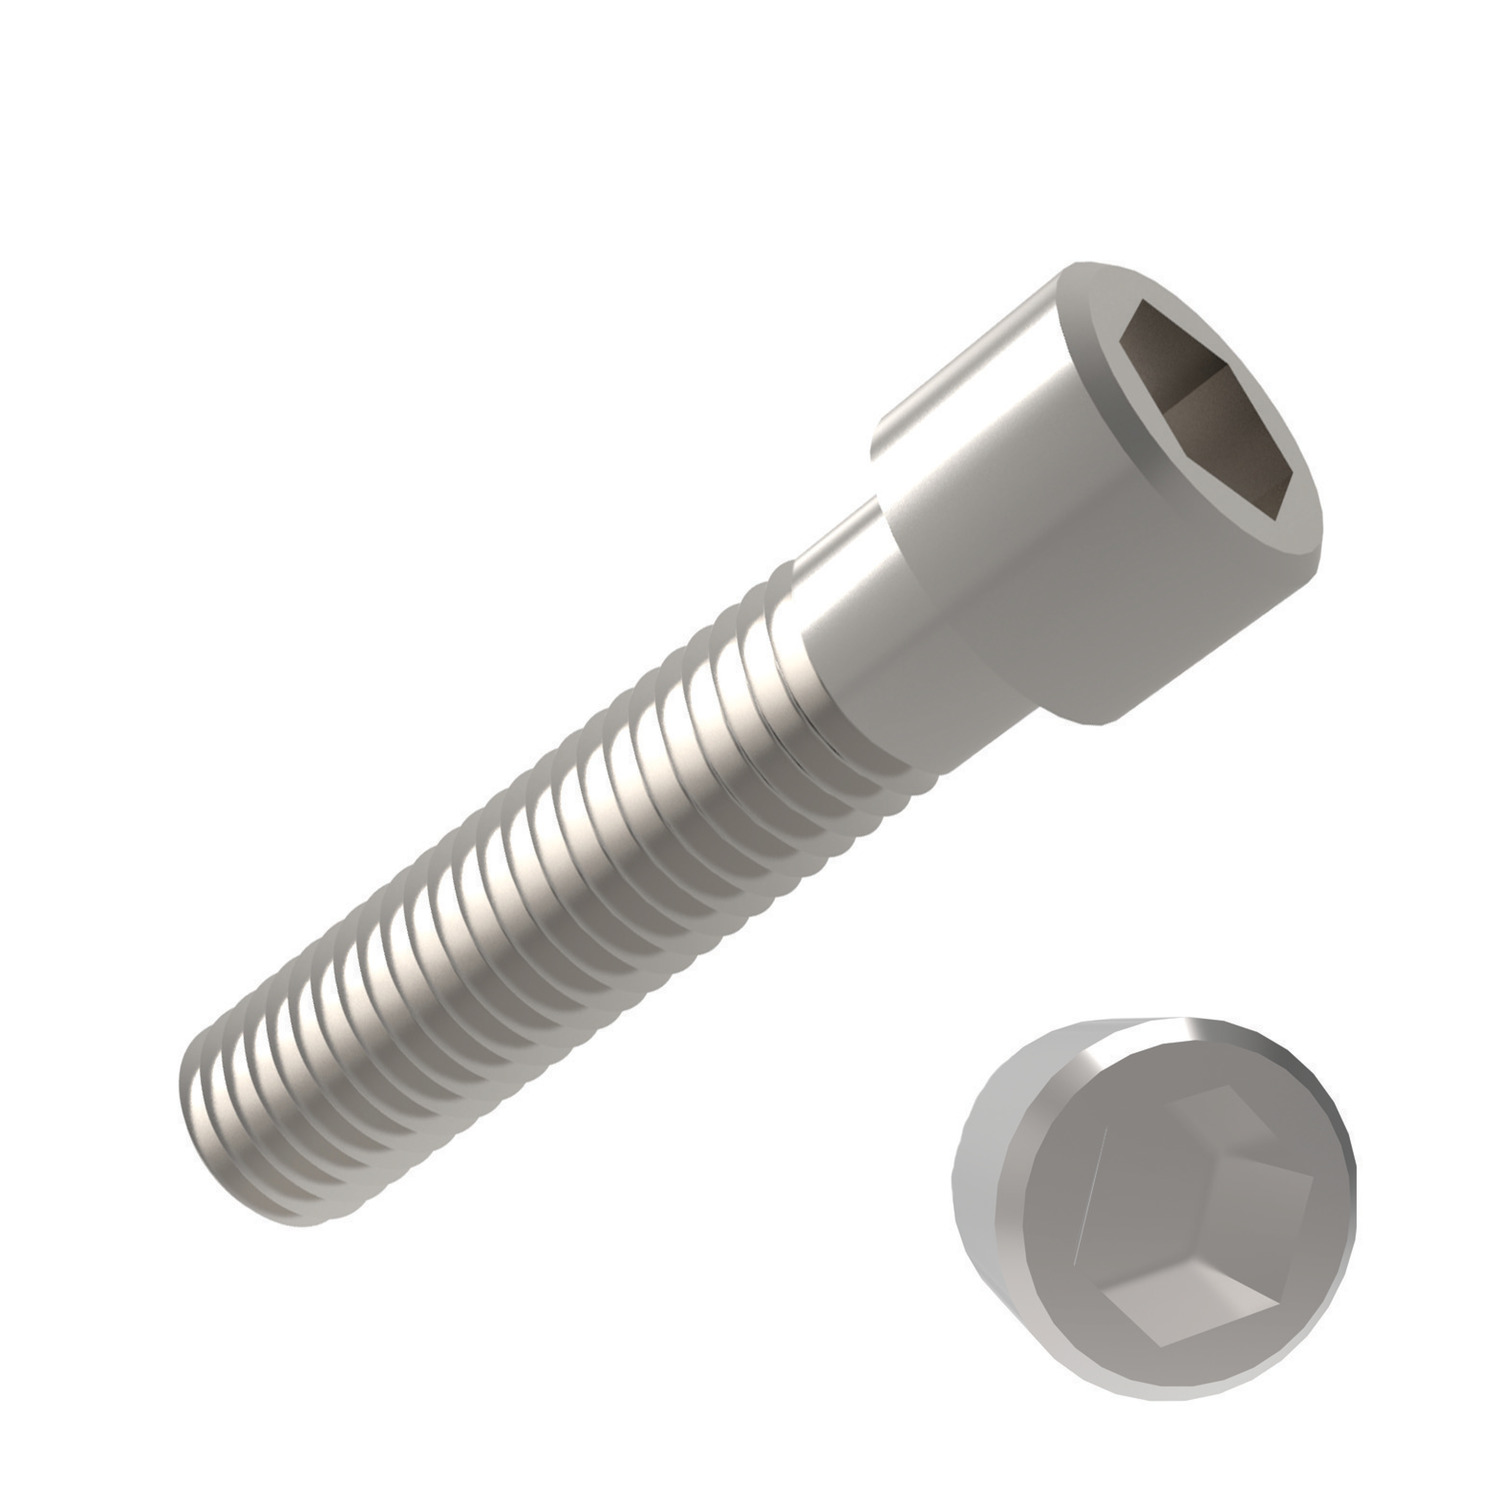 P0200.016-003-A2 Socket Cap Screw  M1.6x3 A2 s/s -